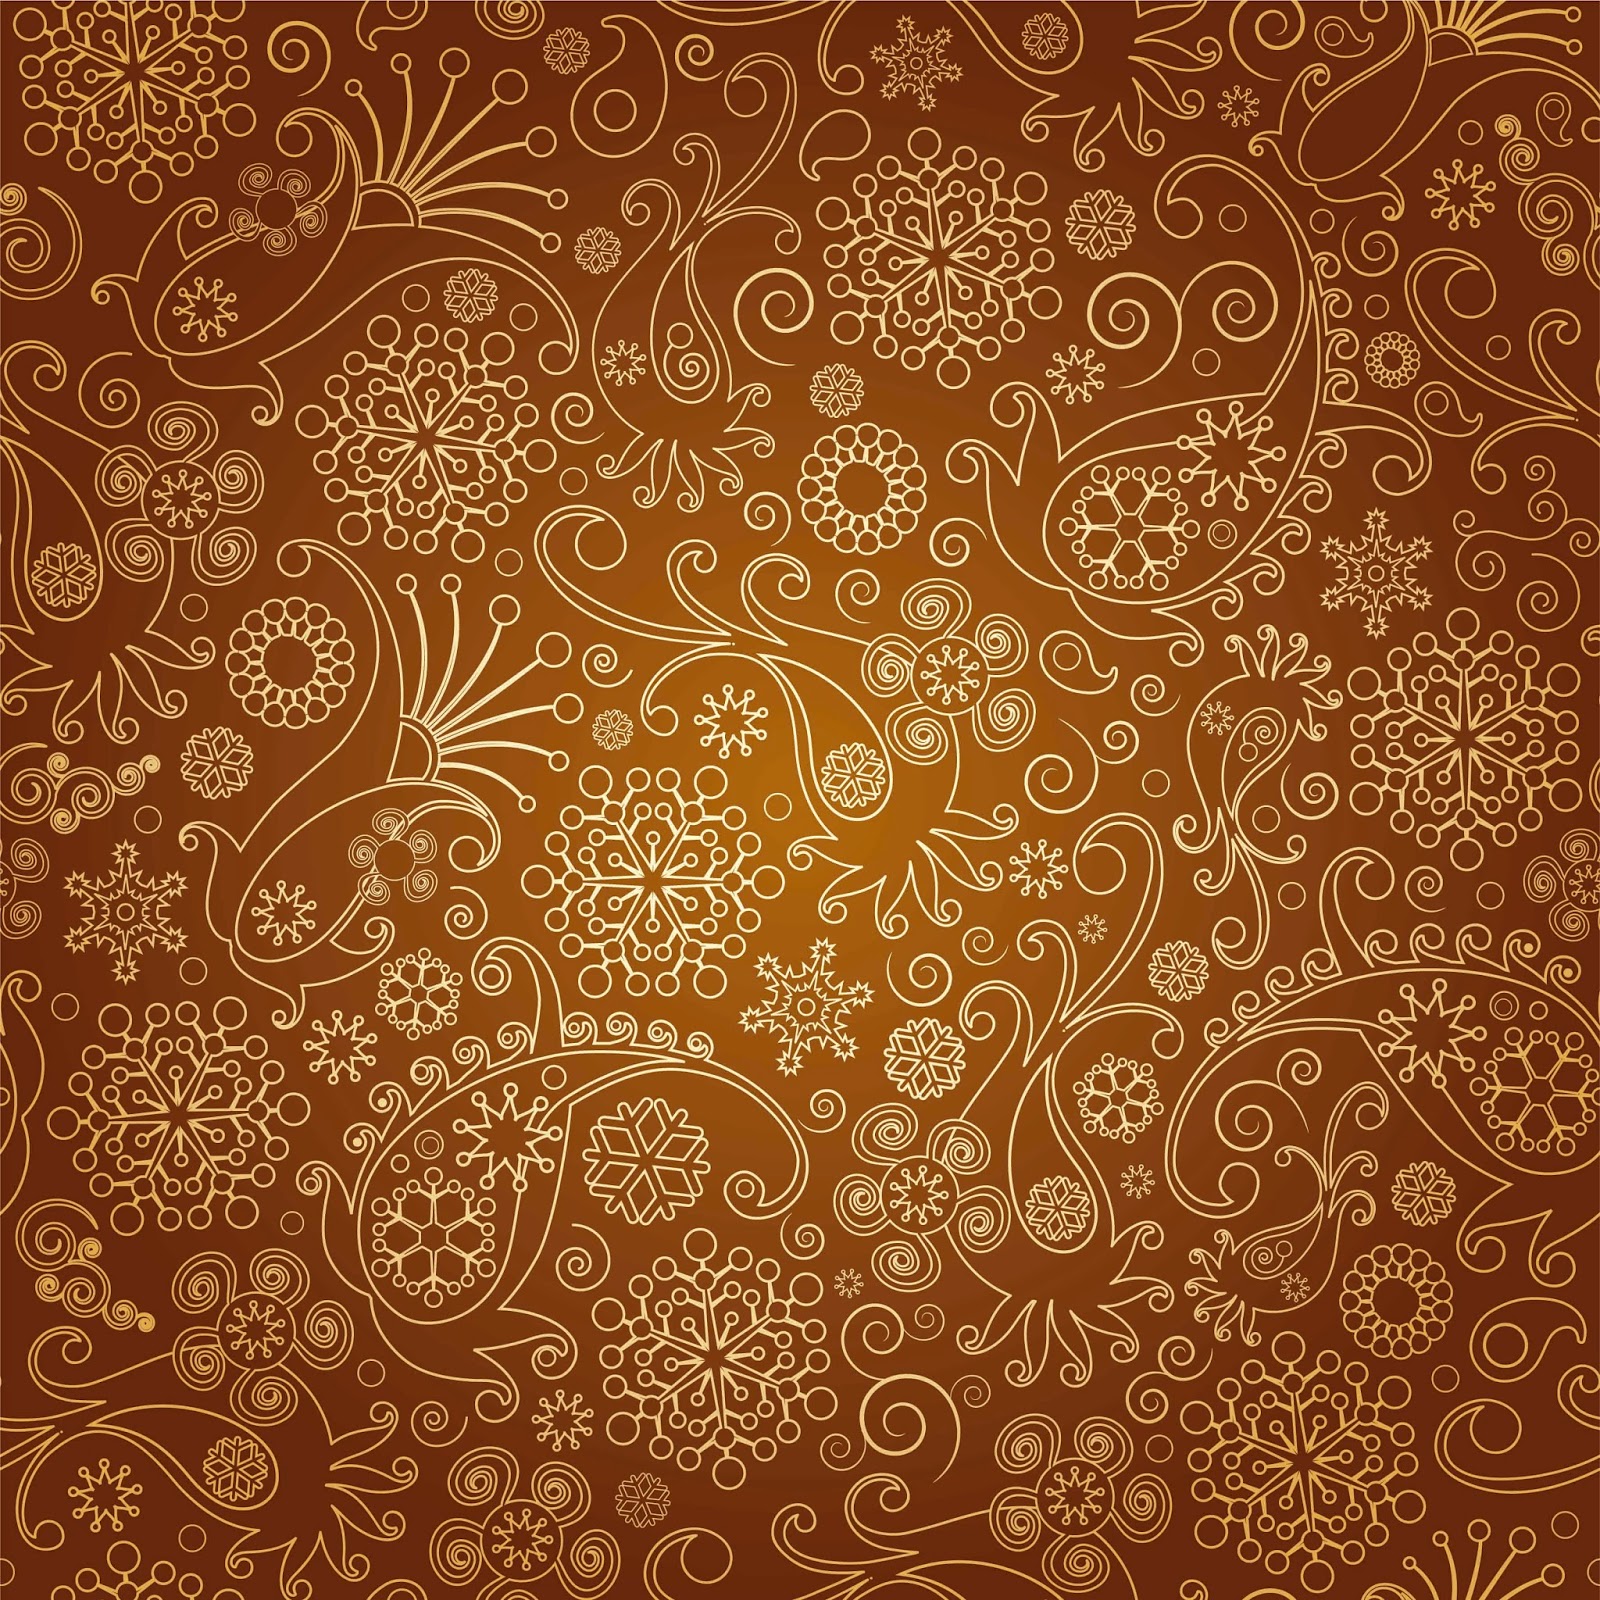 Batik Art Wallpaper